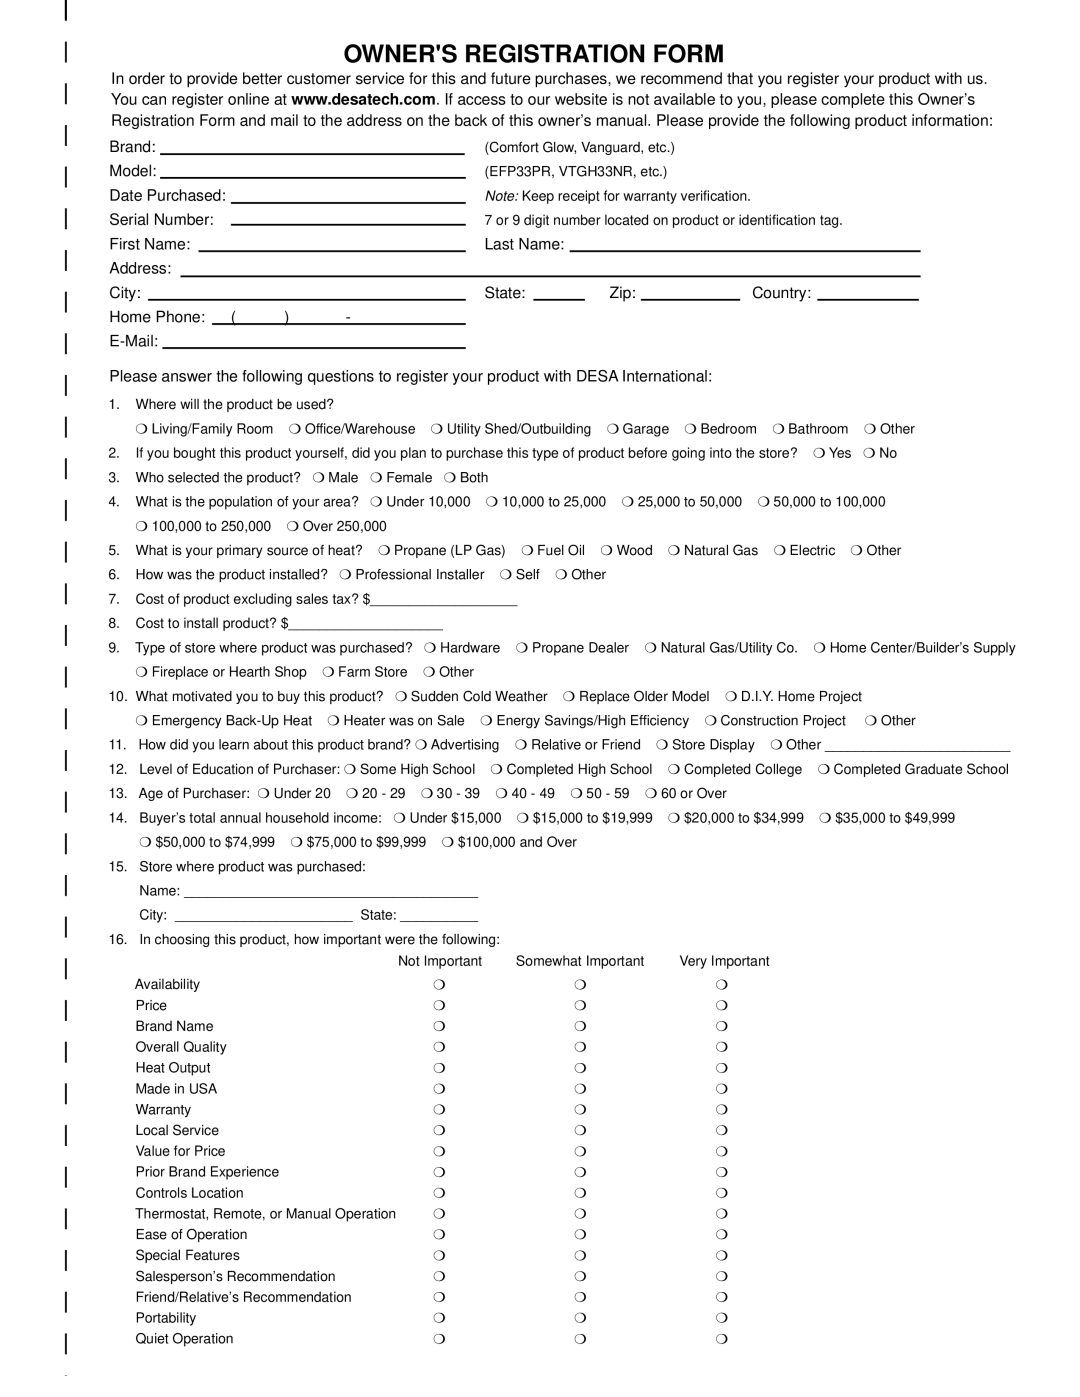 Desa EFS33PR installation manual Owners Registration Form 